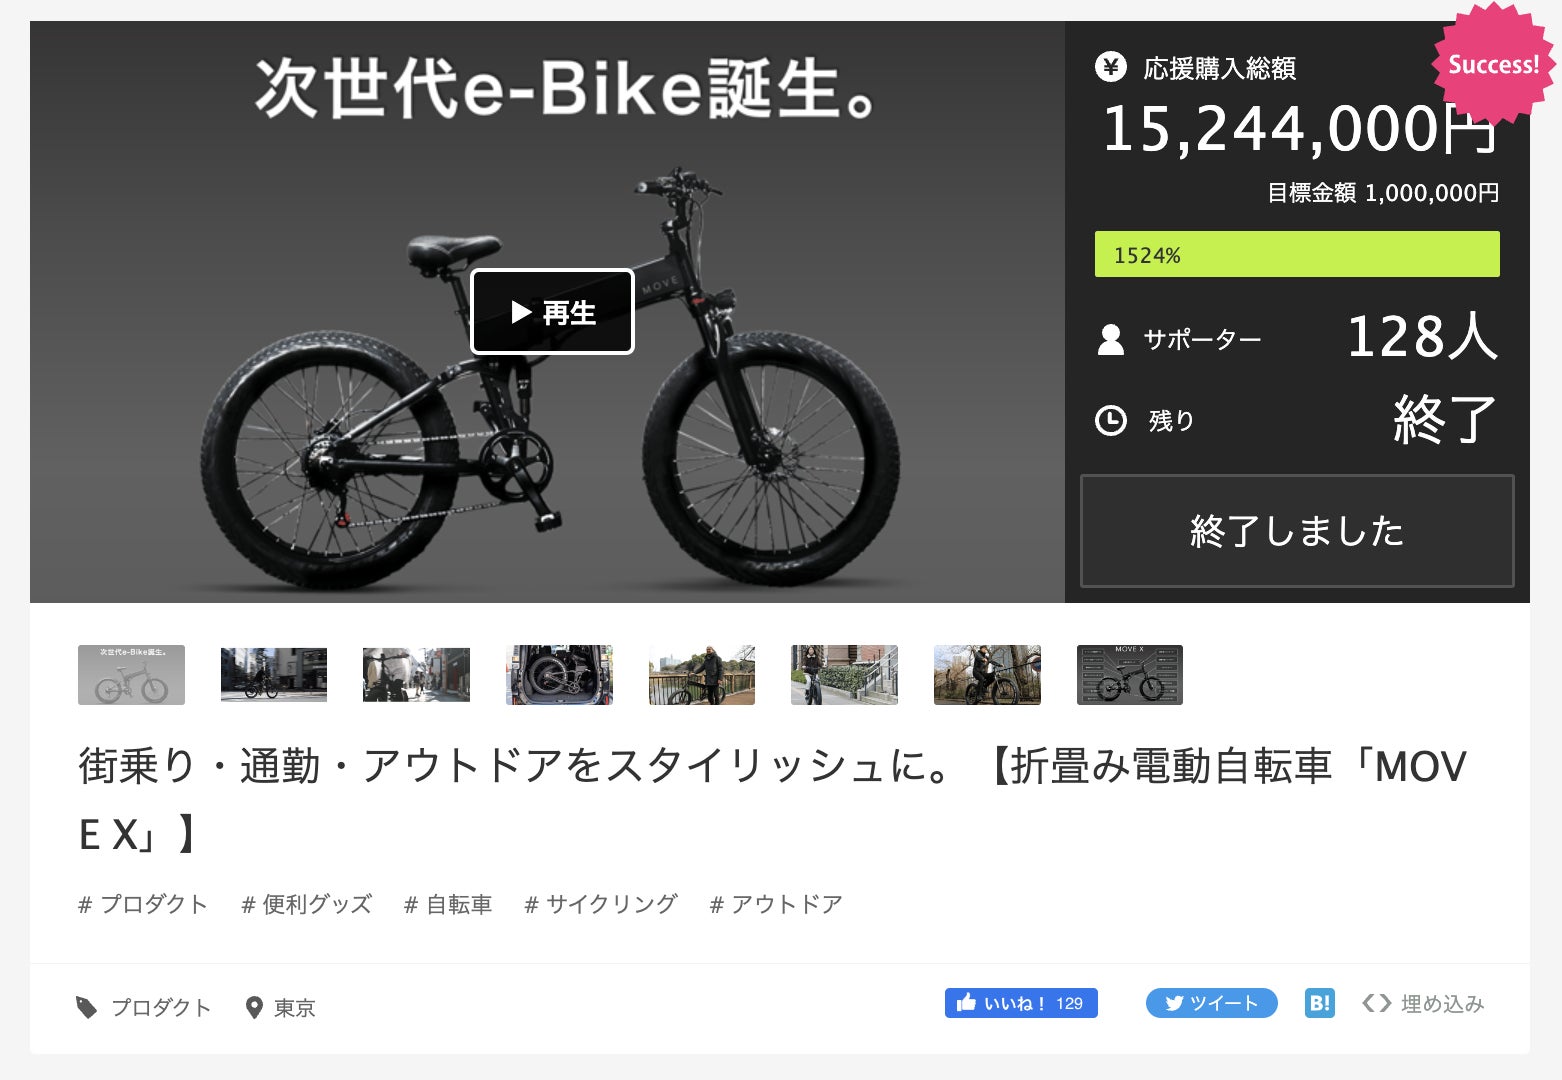 【新商品】Makuakeで1,500万円以上を調達した話題の次世代E-Bike「MOVE X」が待望の新登場。抽選で２名様にE-Bike「MOVE X」を発売記念プレゼントキャンペーン中。のサブ画像3